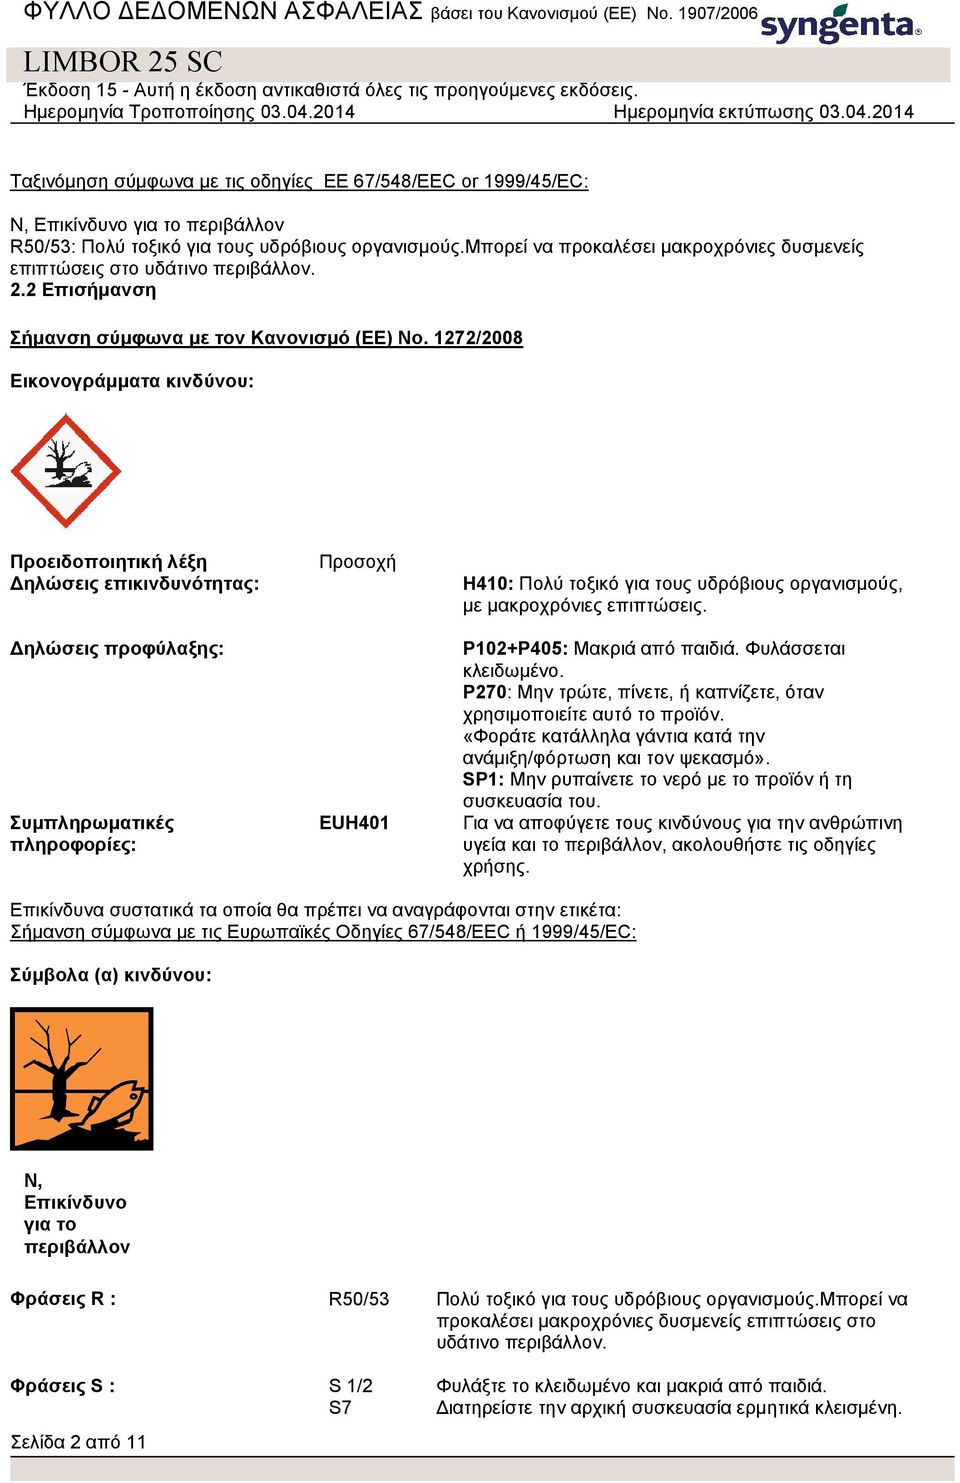 1272/2008 Εικονογράμματα κινδύνου: Προειδοποιητική λέξη Δηλώσεις επικινδυνότητας: Δηλώσεις προφύλαξης: Συμπληρωματικές πληροφορίες: Προσοχή EUH401 H410: Πολύ τοξικό για τους υδρόβιους οργανισμούς, με